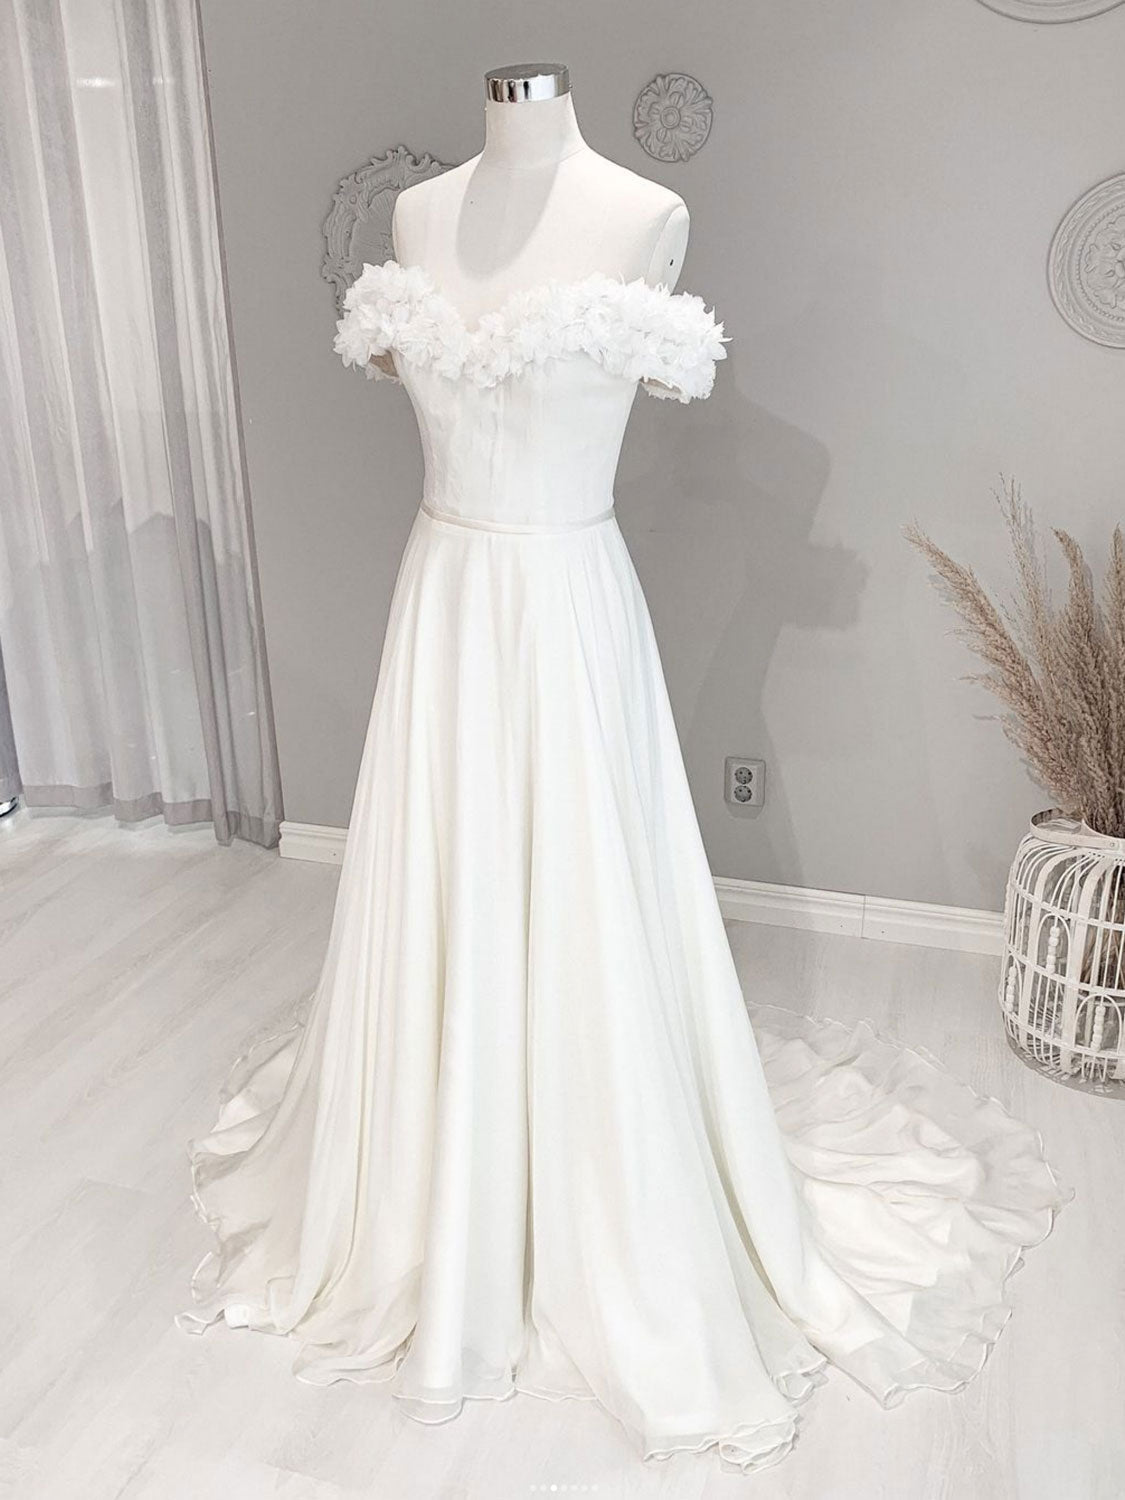 Wedding Dresses With Pocket, White Off Shoulder Flowers Long Wedding Dress, White Beach Wedding Dress